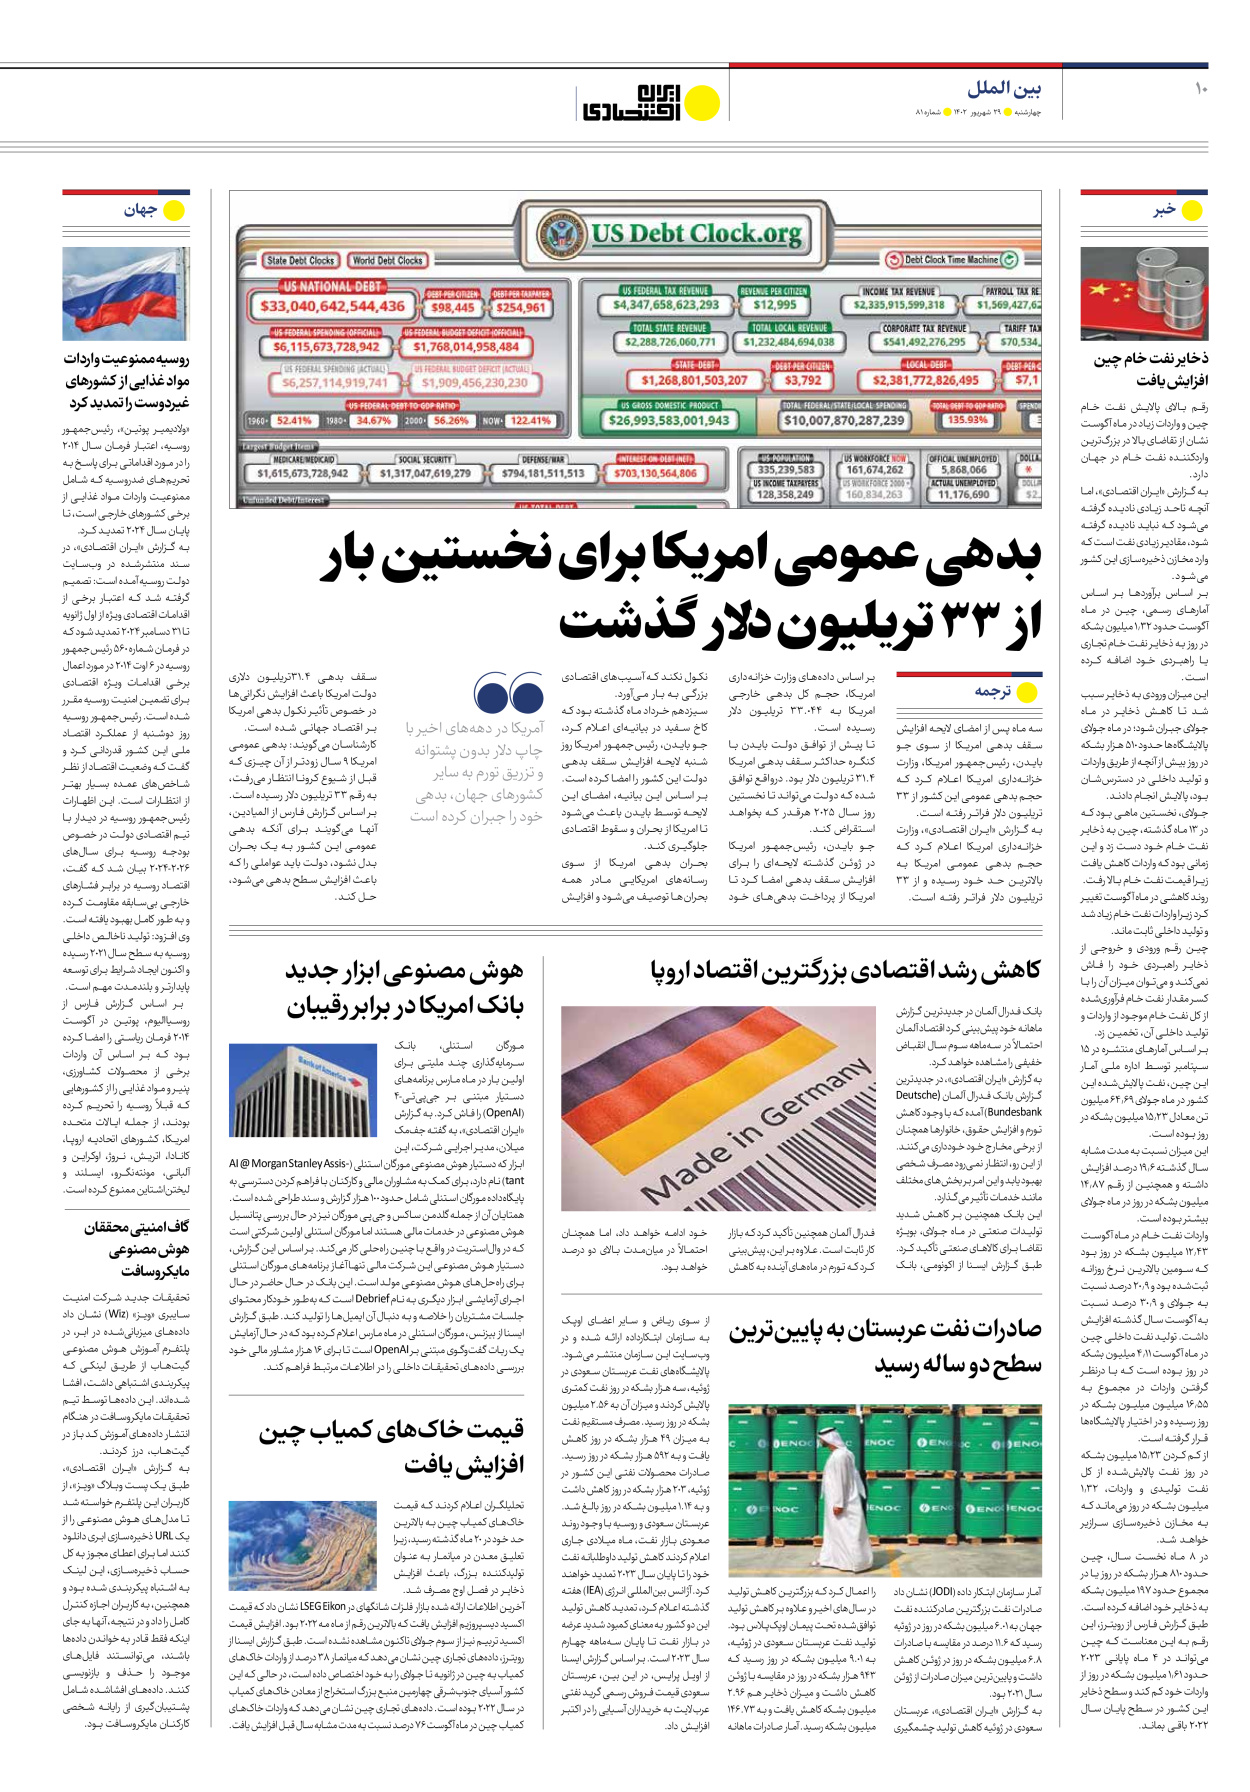 روزنامه ایران اقتصادی - شماره هشتاد و یک - ۲۹ شهریور ۱۴۰۲ - صفحه ۱۰